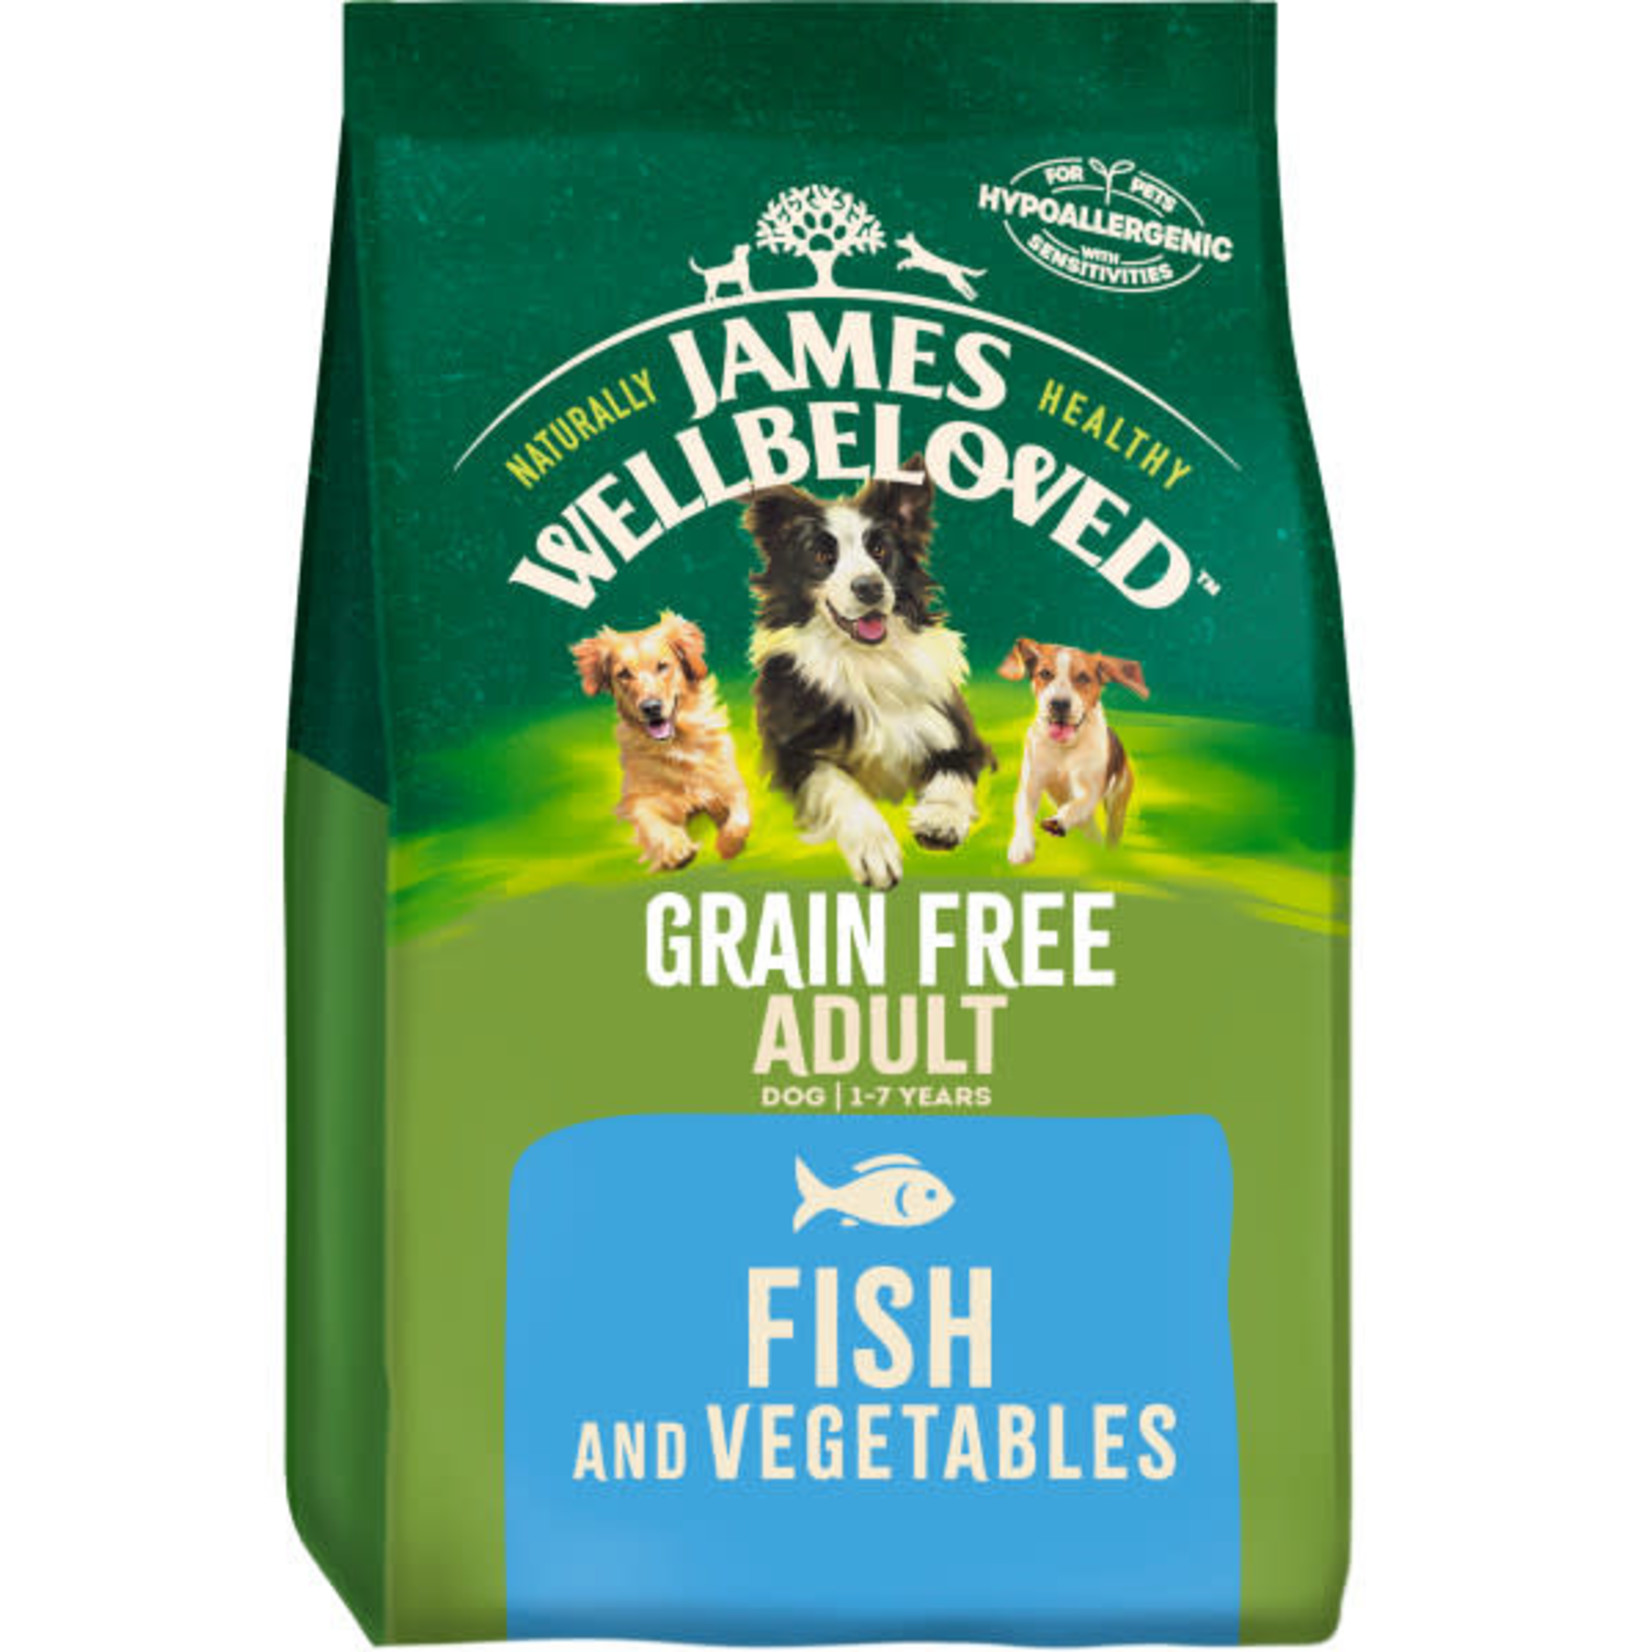 James Wellbeloved Grain Free Adult Dog Dry Food, Fish & Vegetable